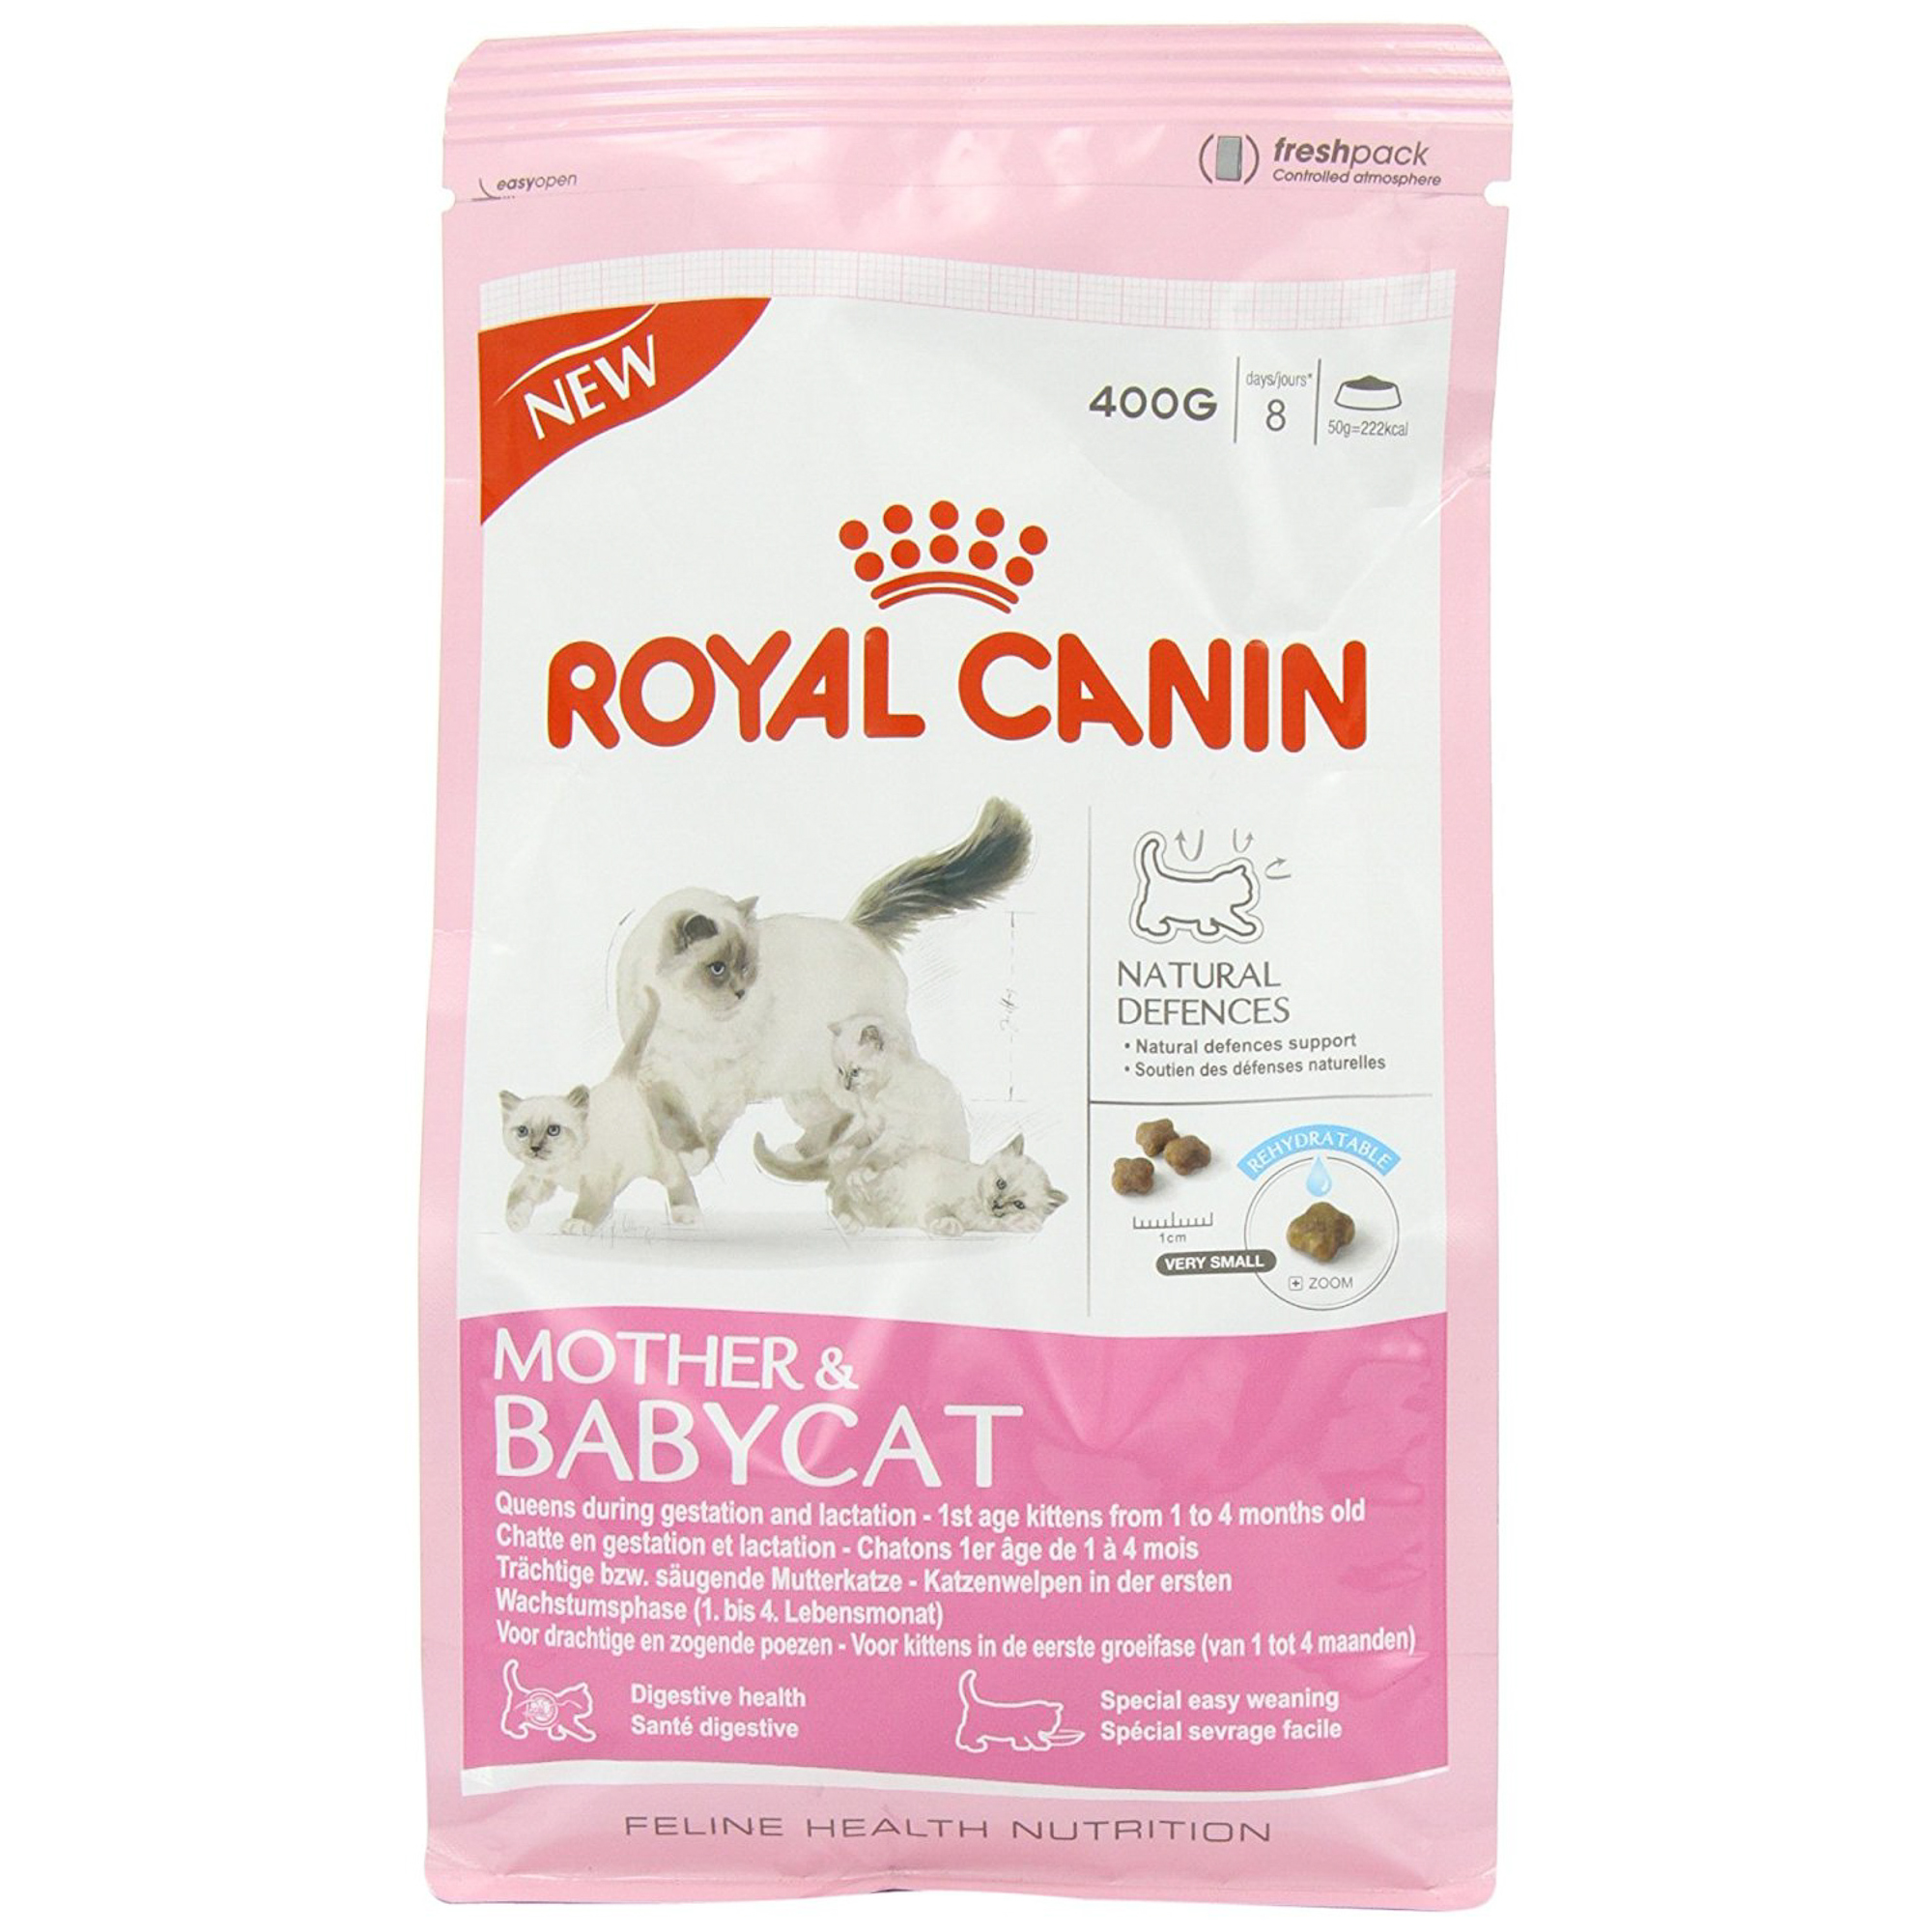 Корм для кошек ROYAL CANIN Mother & Babycat для котят в возрасте от 1 до 4-х месяцев, беременных и лактирующих кошек, 400г корм для кошек royal canin mother